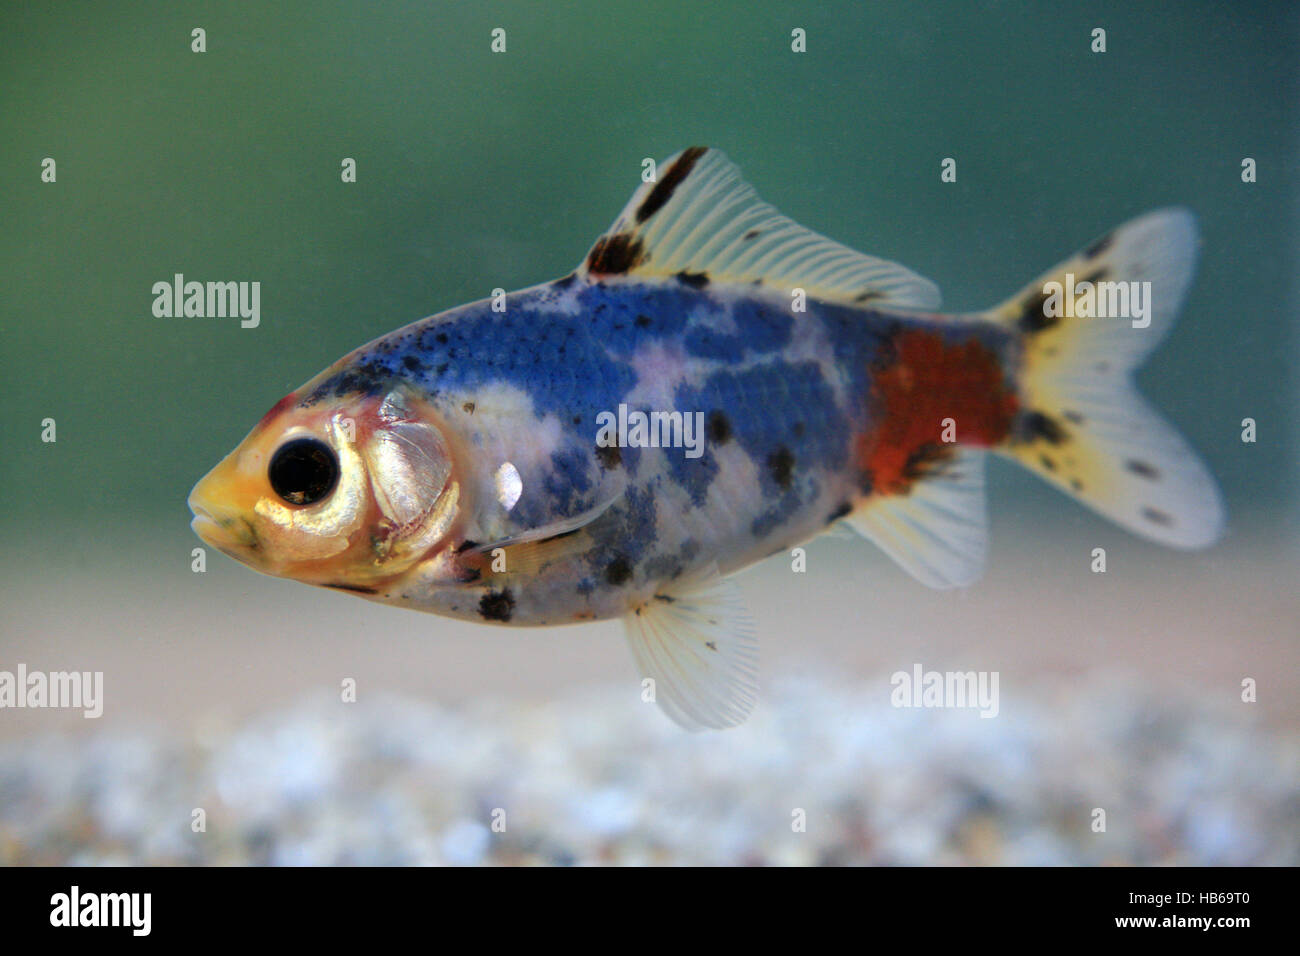 Carassius auratus, goldfish Stock Photo